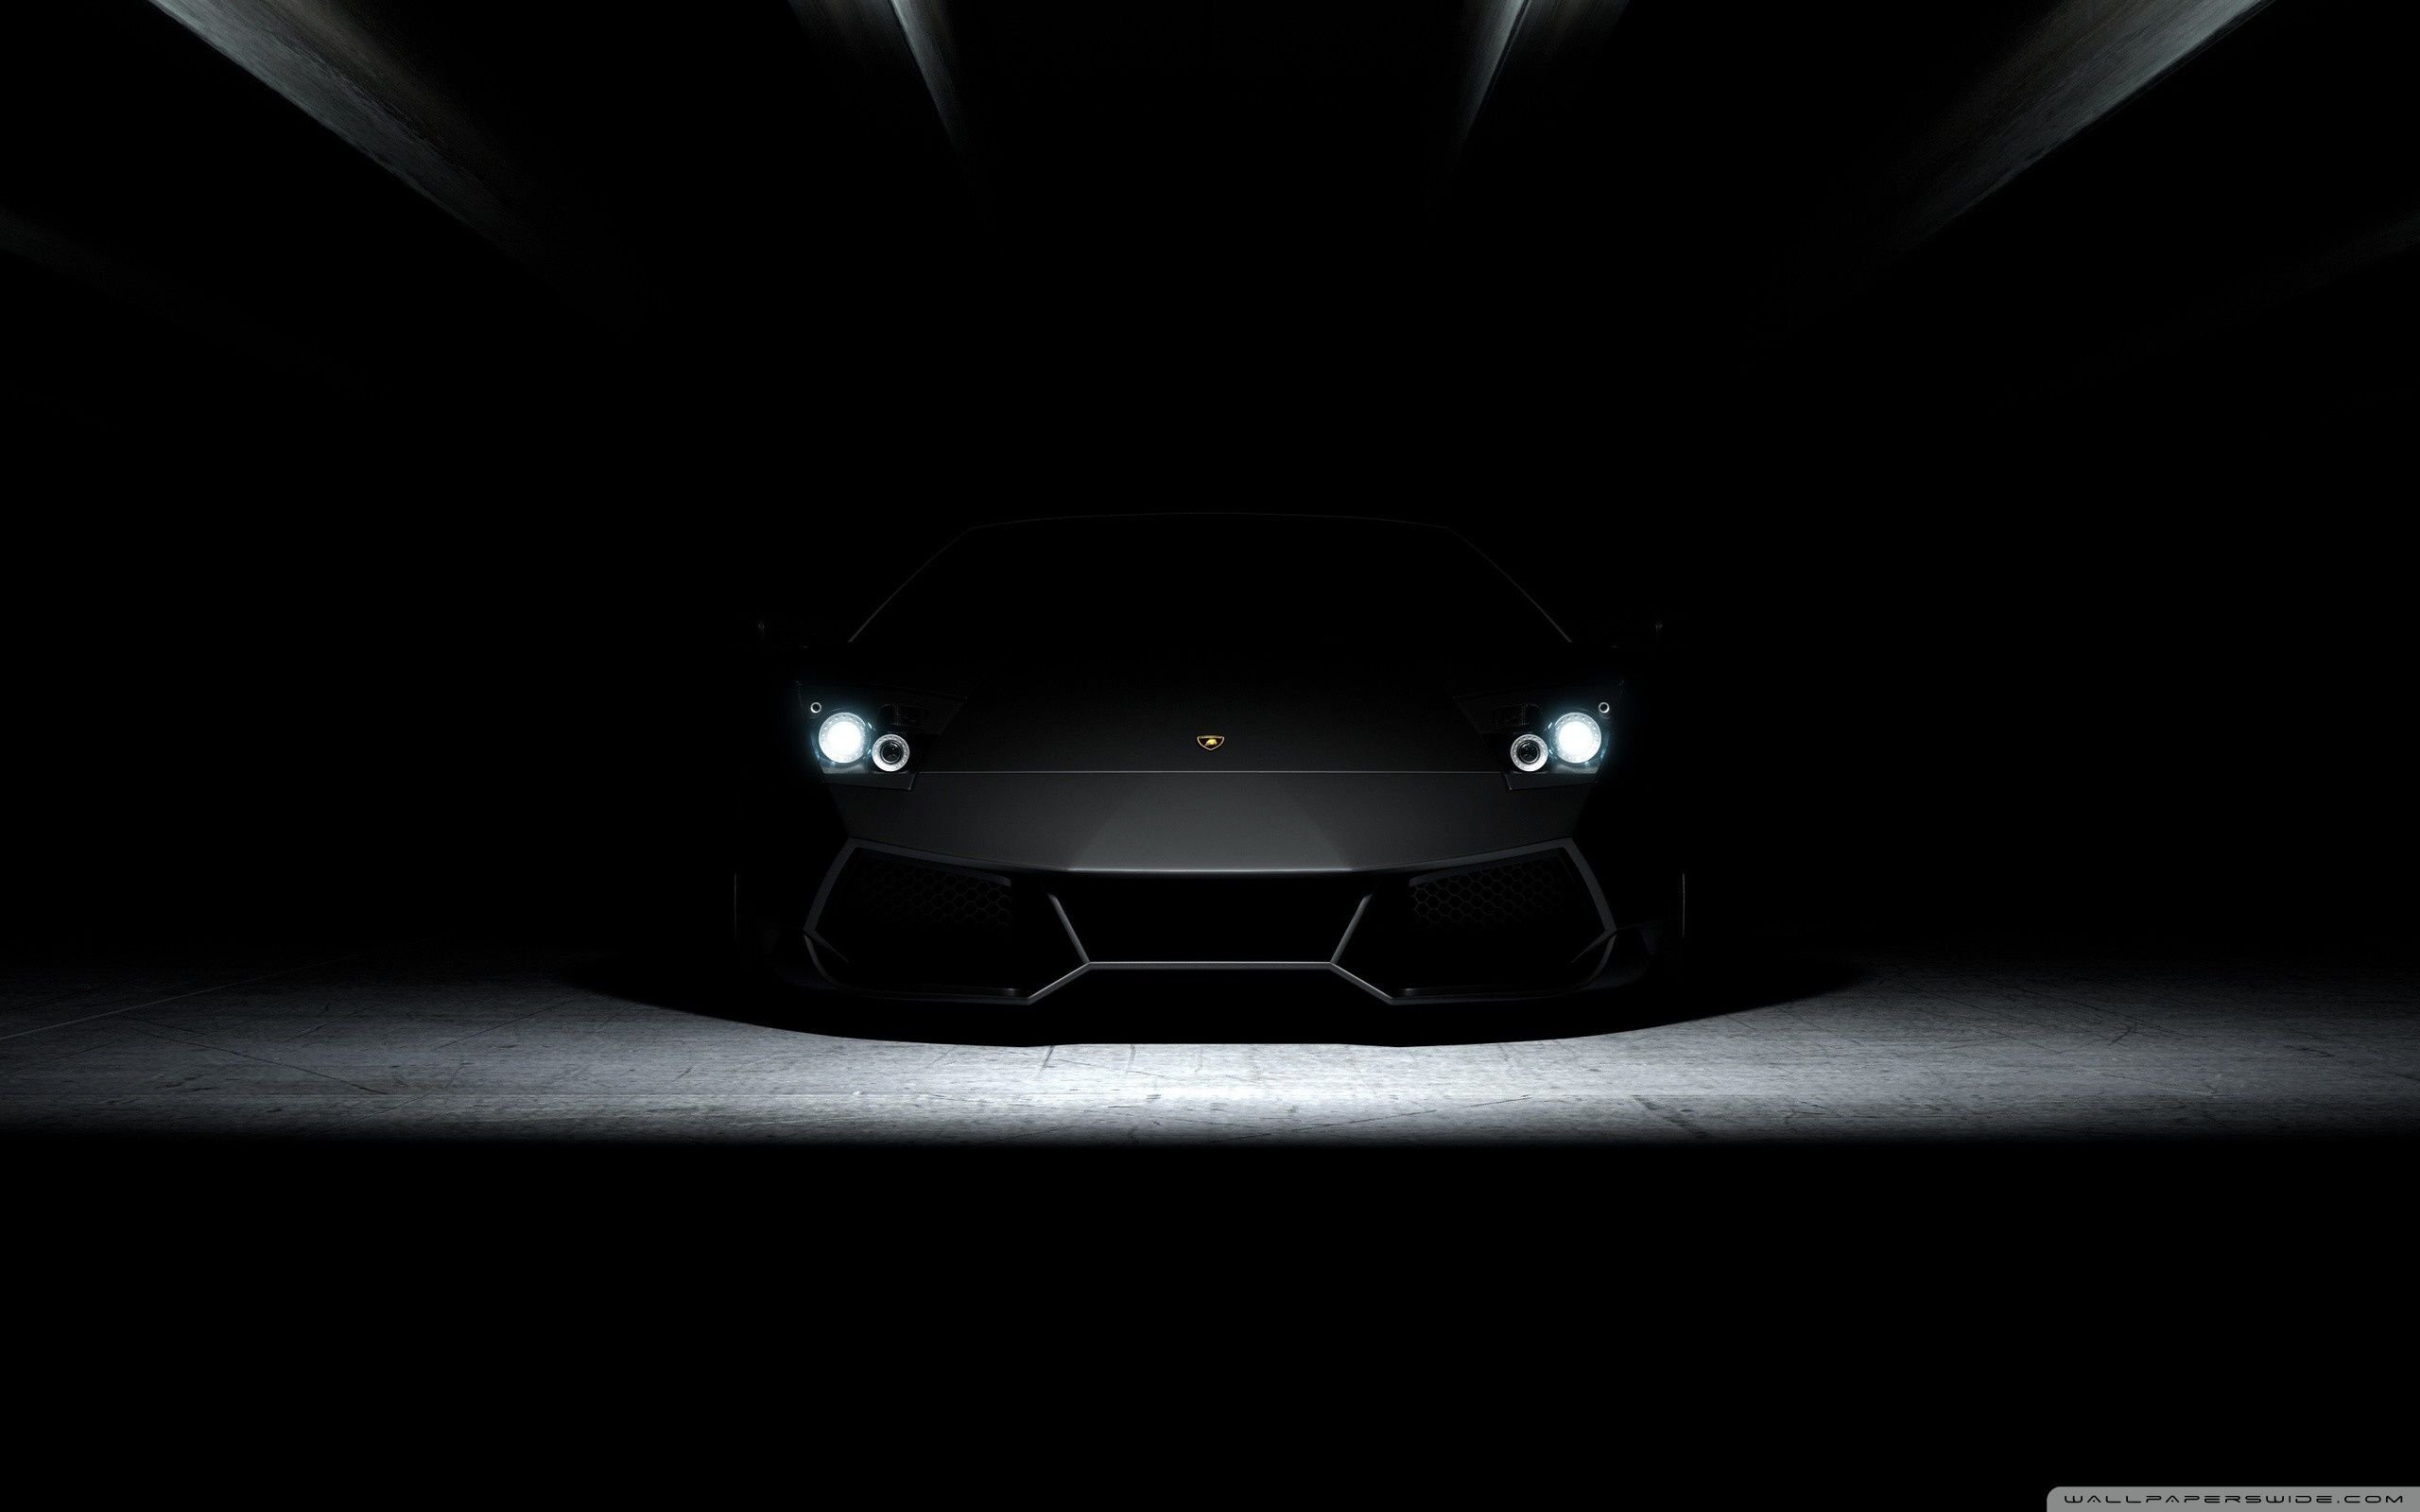 Hình nền Lamborghini sẽ khiến cho màn hình của bạn trở nên mạnh mẽ, đầy cá tính và sự thể hiện đẳng cấp. Những hình ảnh về Lamborghini được sử dụng làm hình nền sẽ là cách tuyệt vời để chiến thắng tất cả các đối thủ khác.